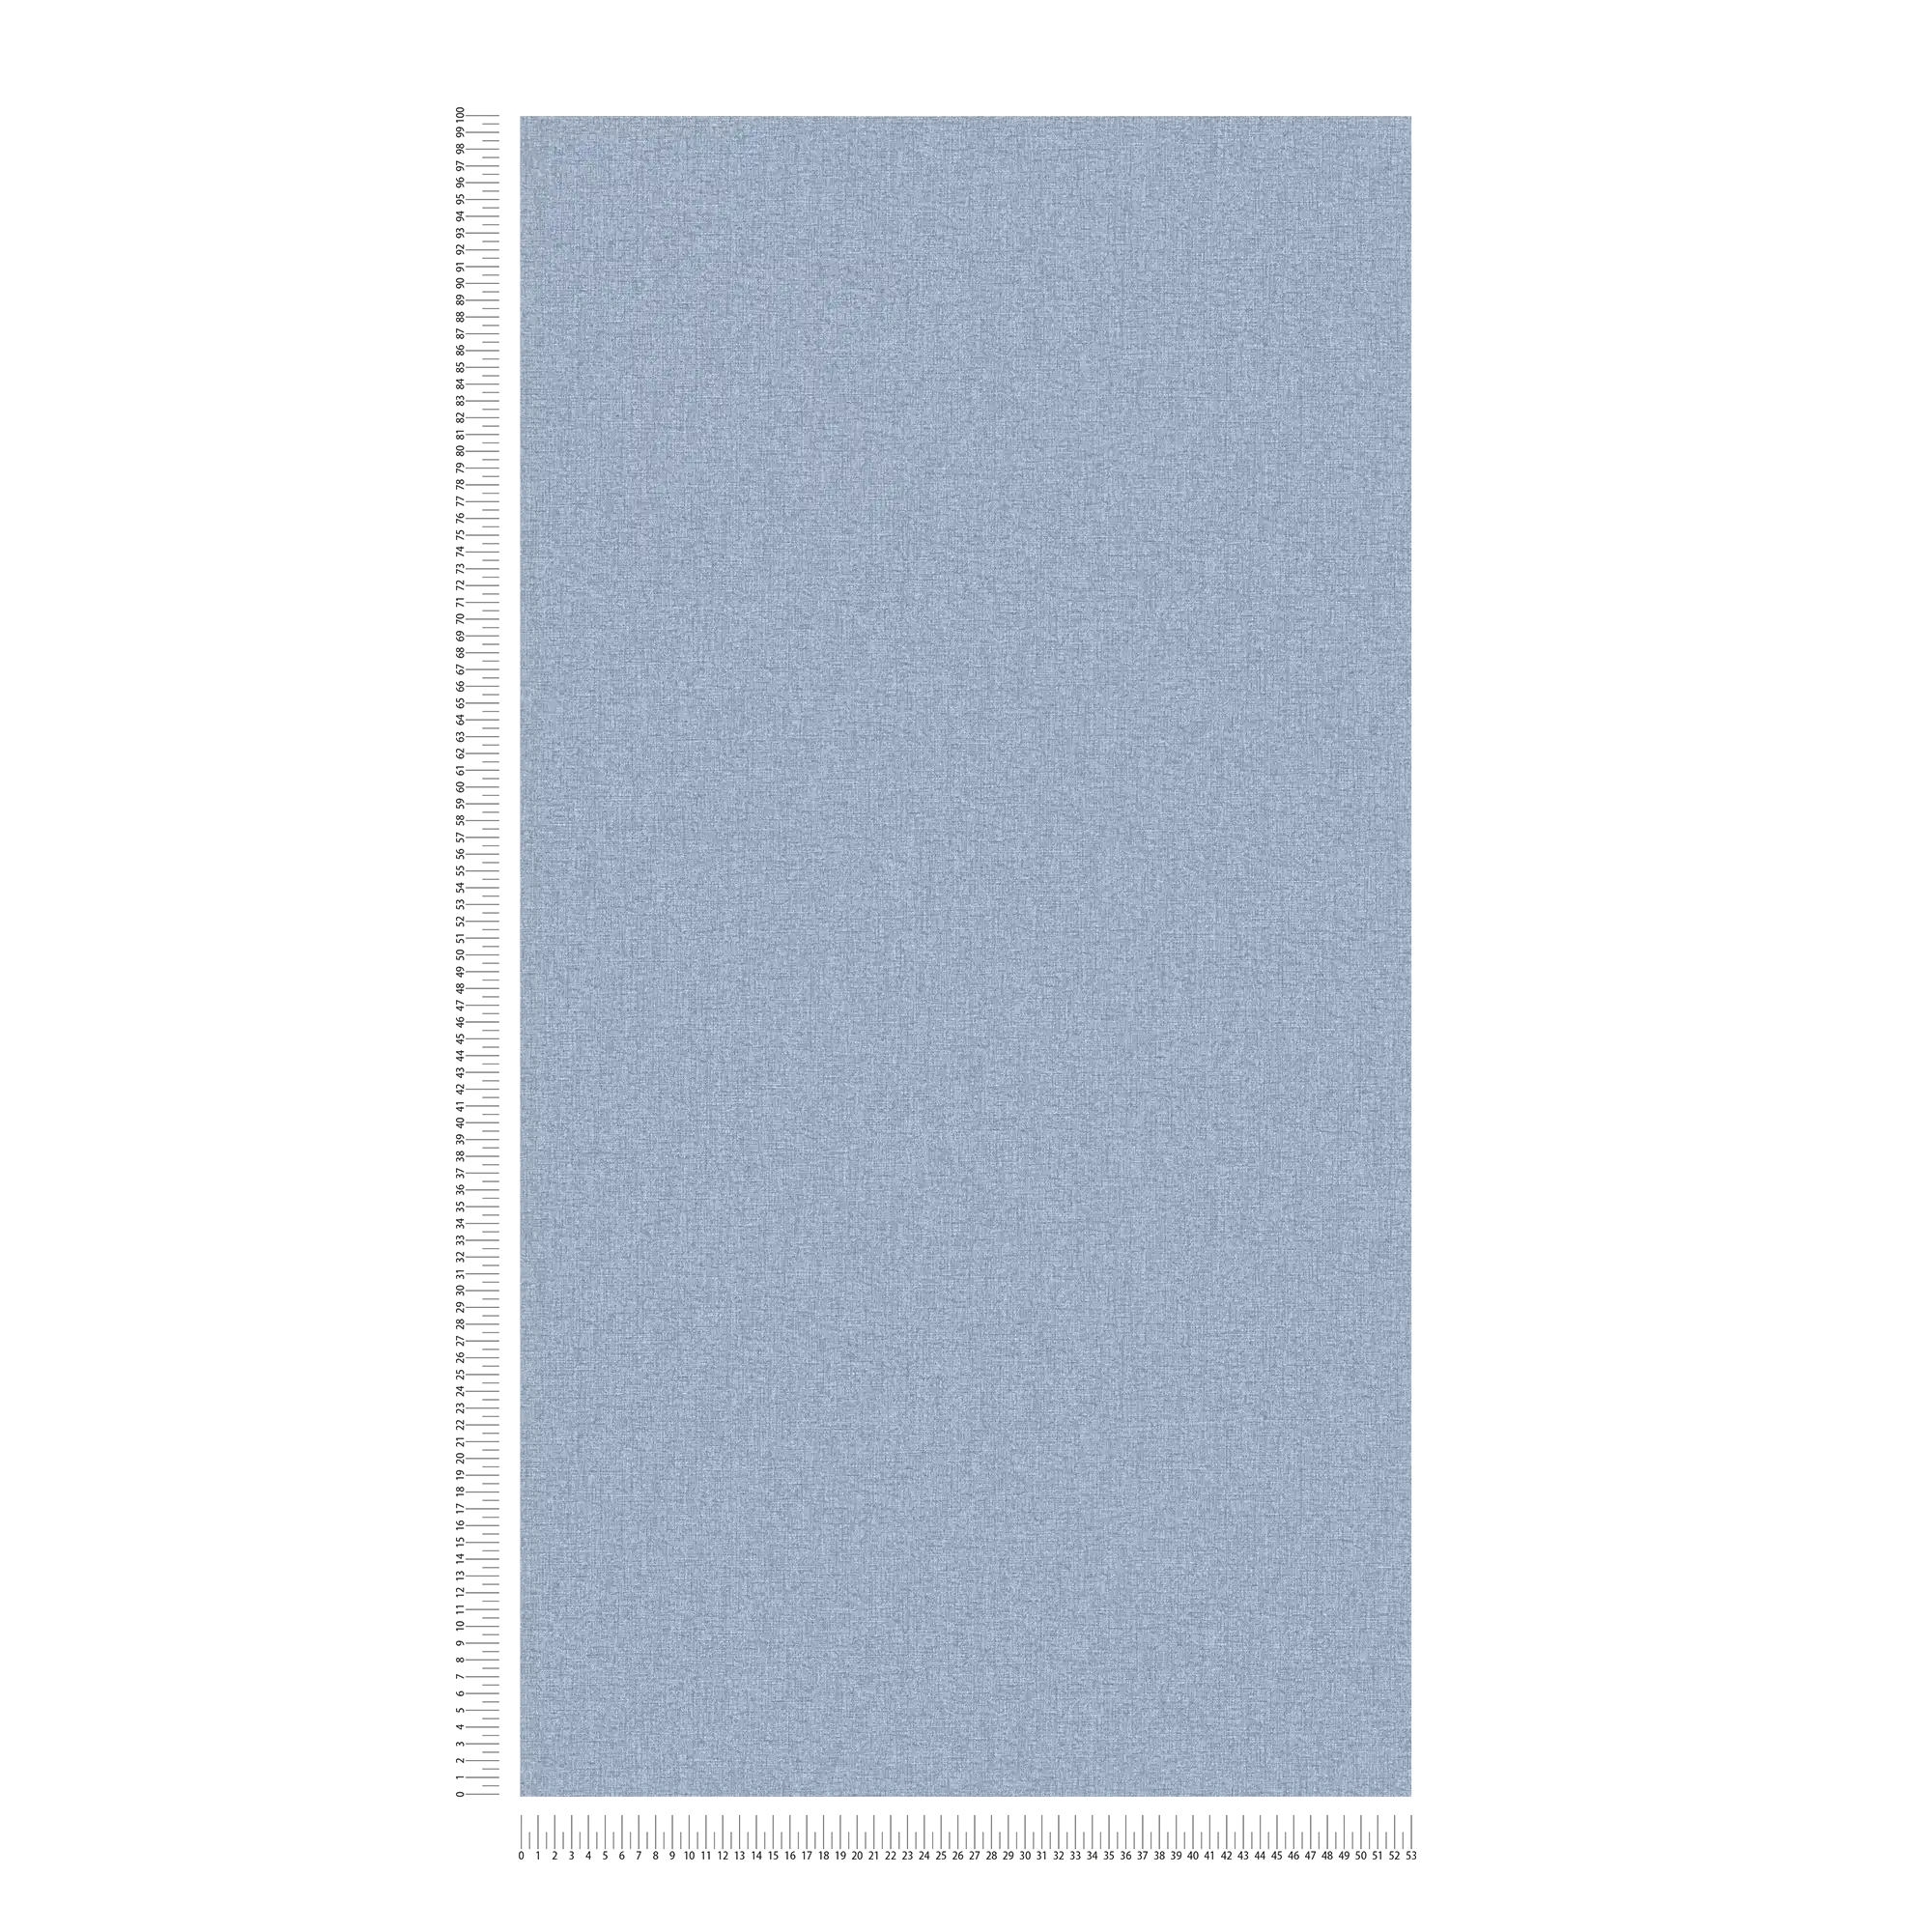             Effen vliesbehang in textiellook met lichte structuur, mat - blauw
        